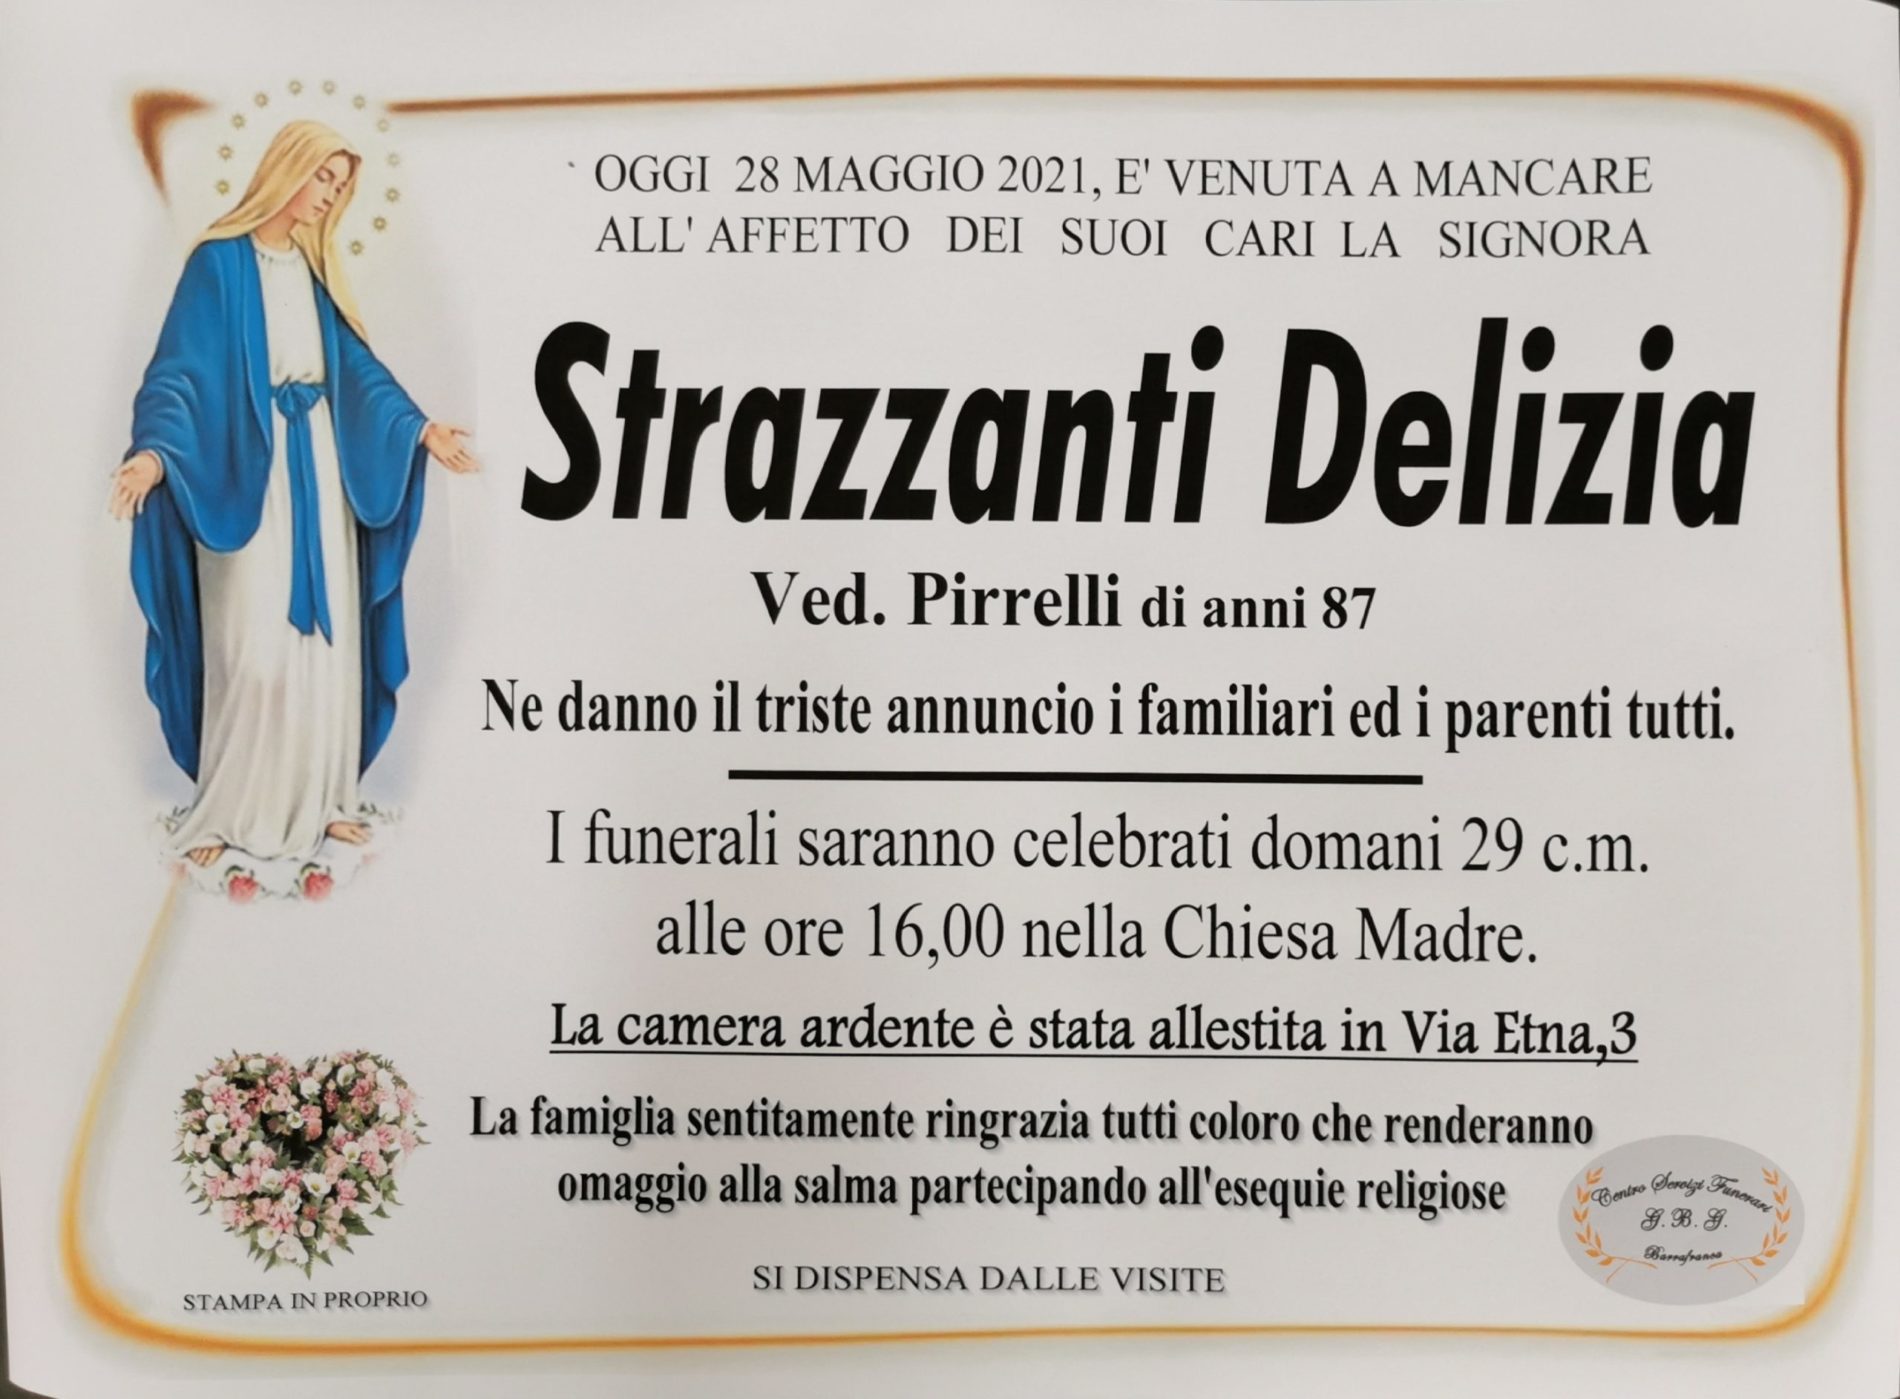 Annuncio servizi funerari agenzia G.B.G. sig.ra Strazzanti Delizia ved. Pirrelli di anni 87